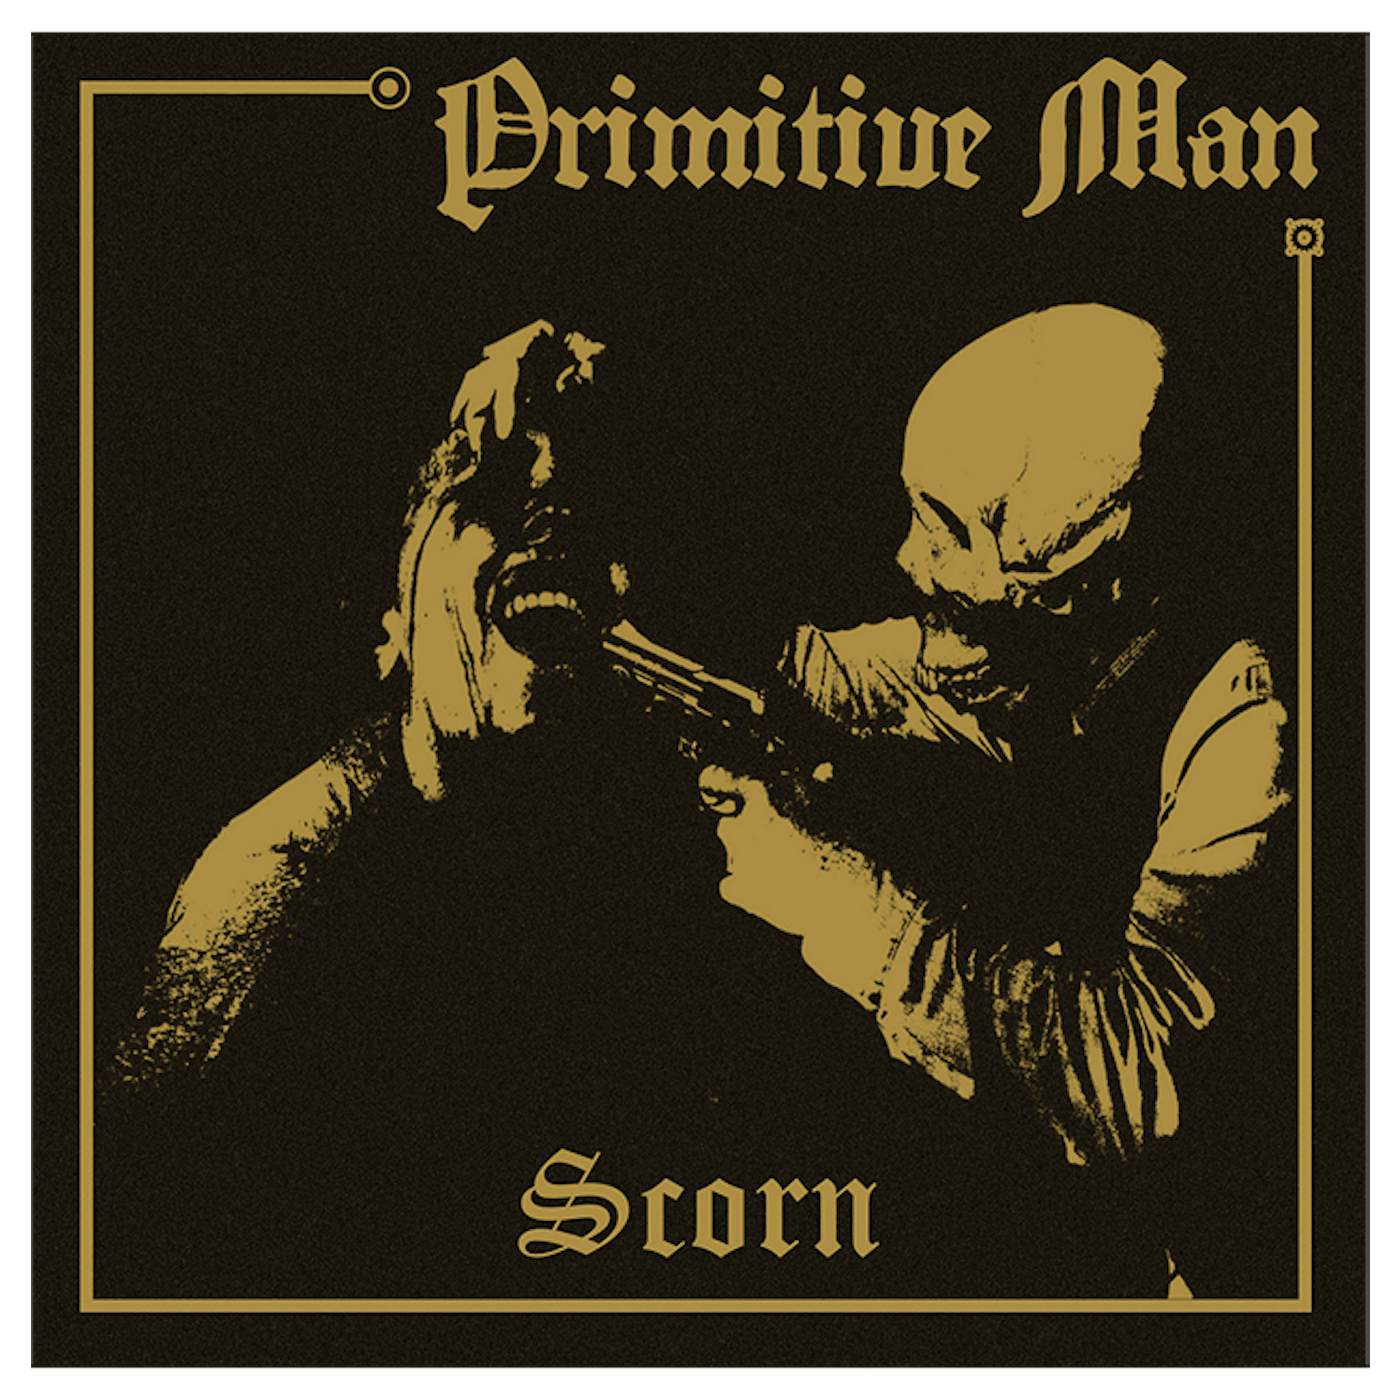 PRIMITIVE MAN - 'Scorn' CD